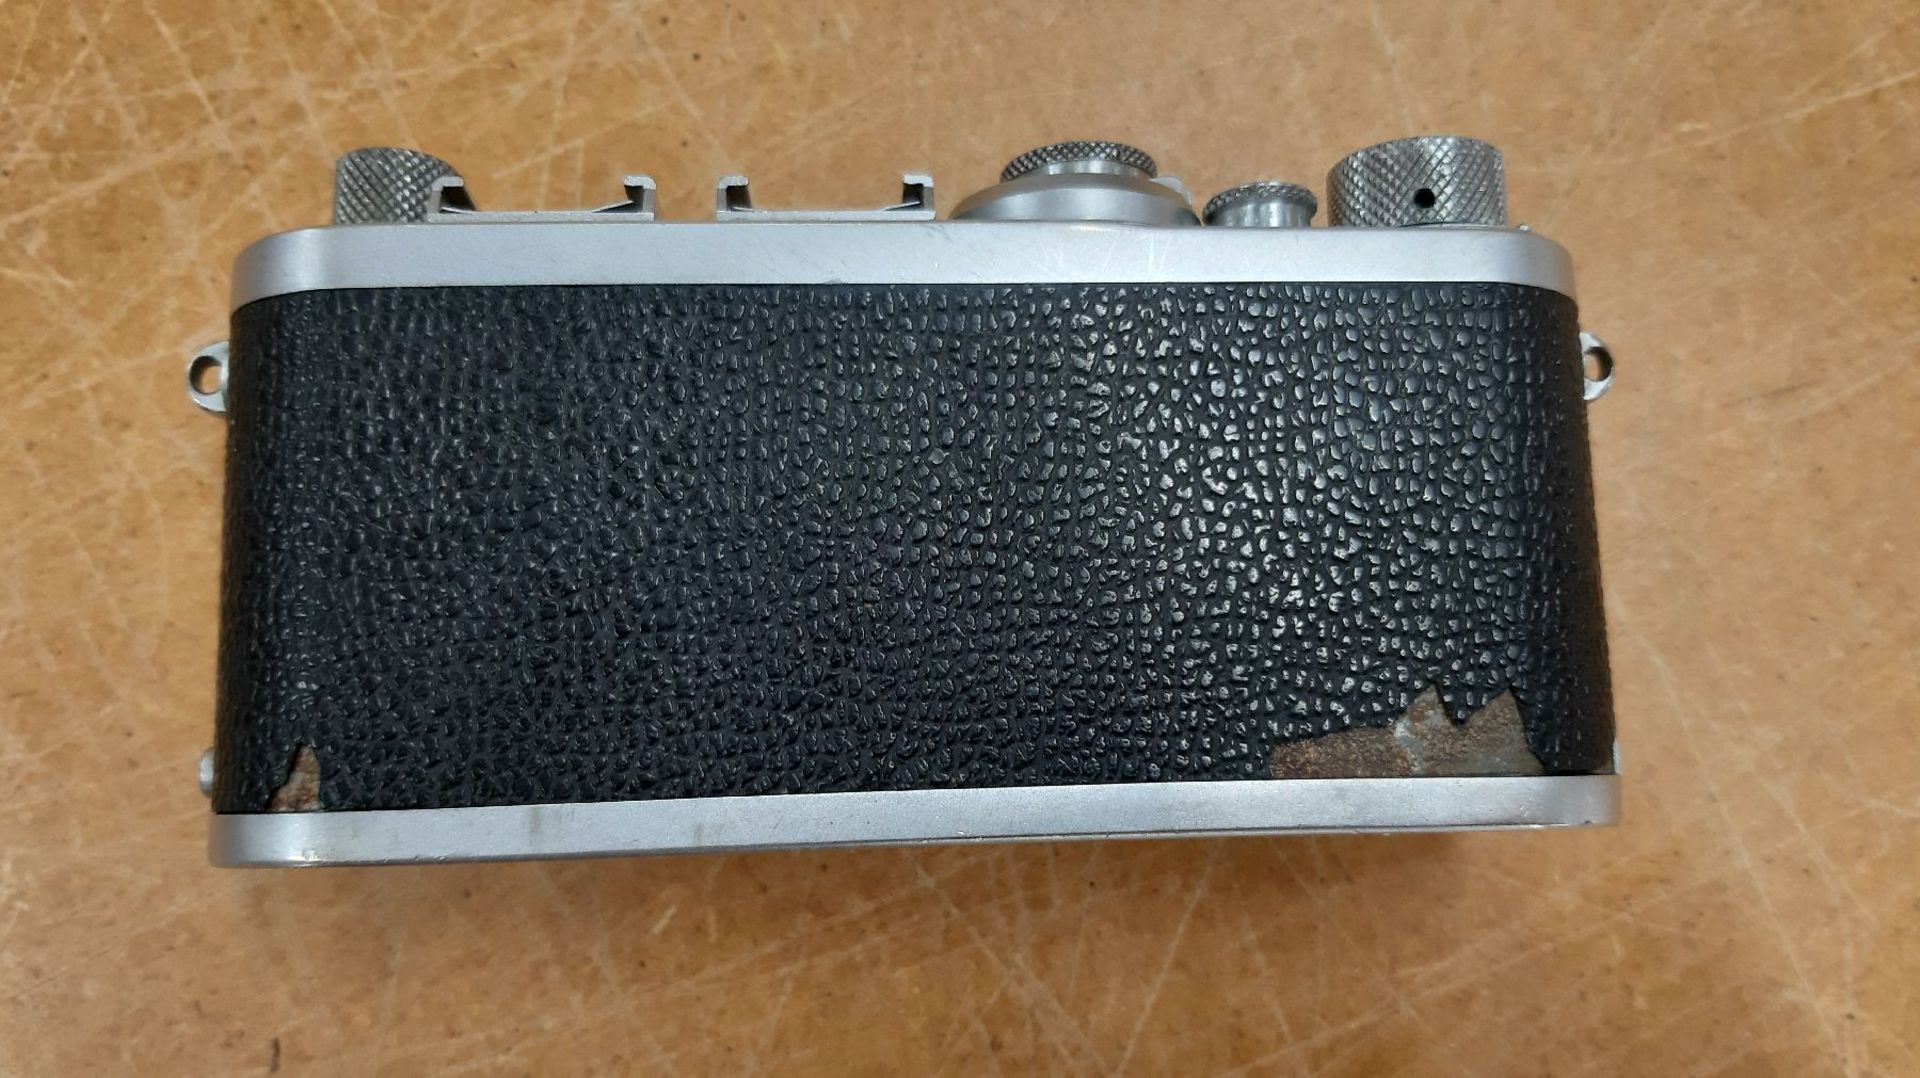 Leica-Kamera If, 1952 -56, No. 789686,  Belederung defekt, - Bild 4 aus 8